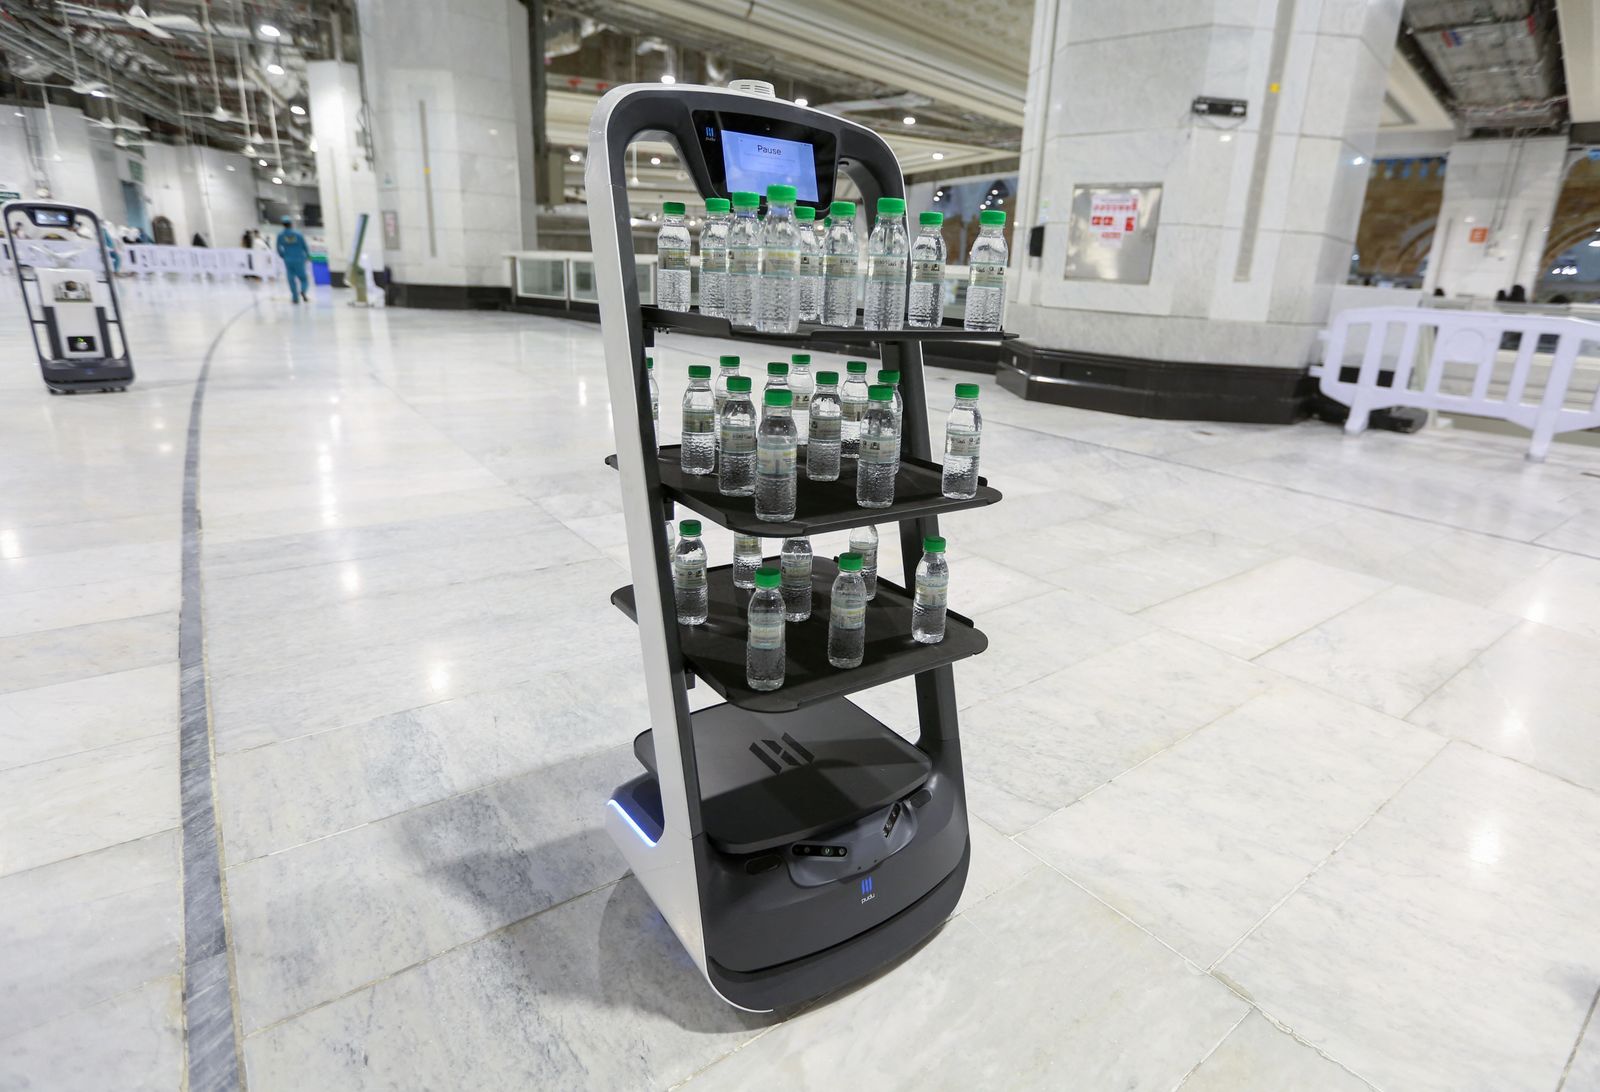 الروبوت الذكي الذي يستخدم لأول مرة في الحرم المكي الشريف في مكة المكرمة لتوزيع مياه زمزم على قاصدي الحرم كإجراء وقائي للحد من التلامس ومنع تفشي فيروس كورونا 15 يونيو 2021 - AFP